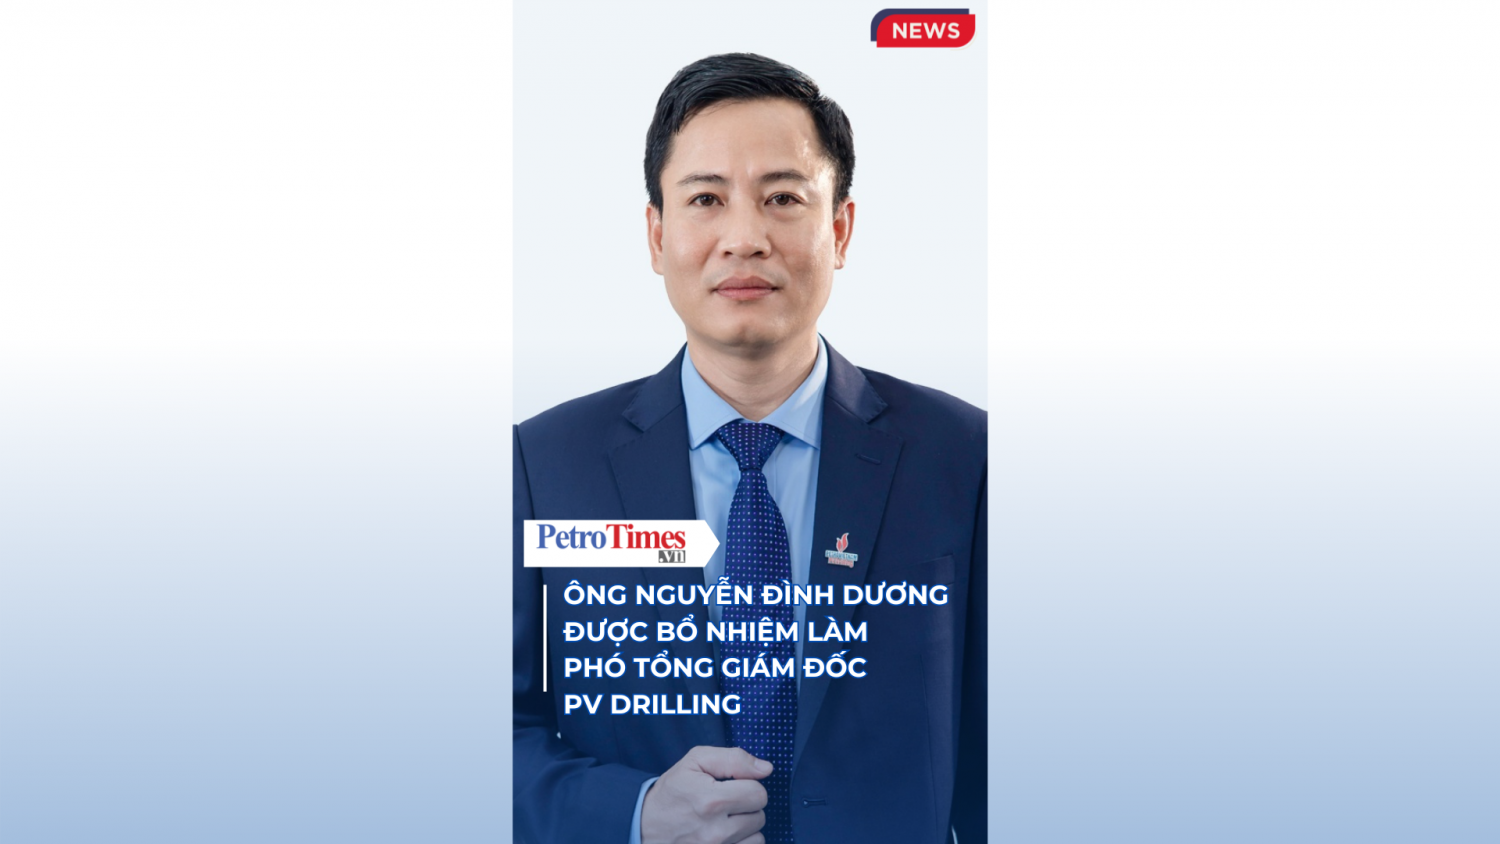 Ông Nguyễn Đình Dương được bổ nhiệm làm Phó Tổng giám đốc PV Drilling